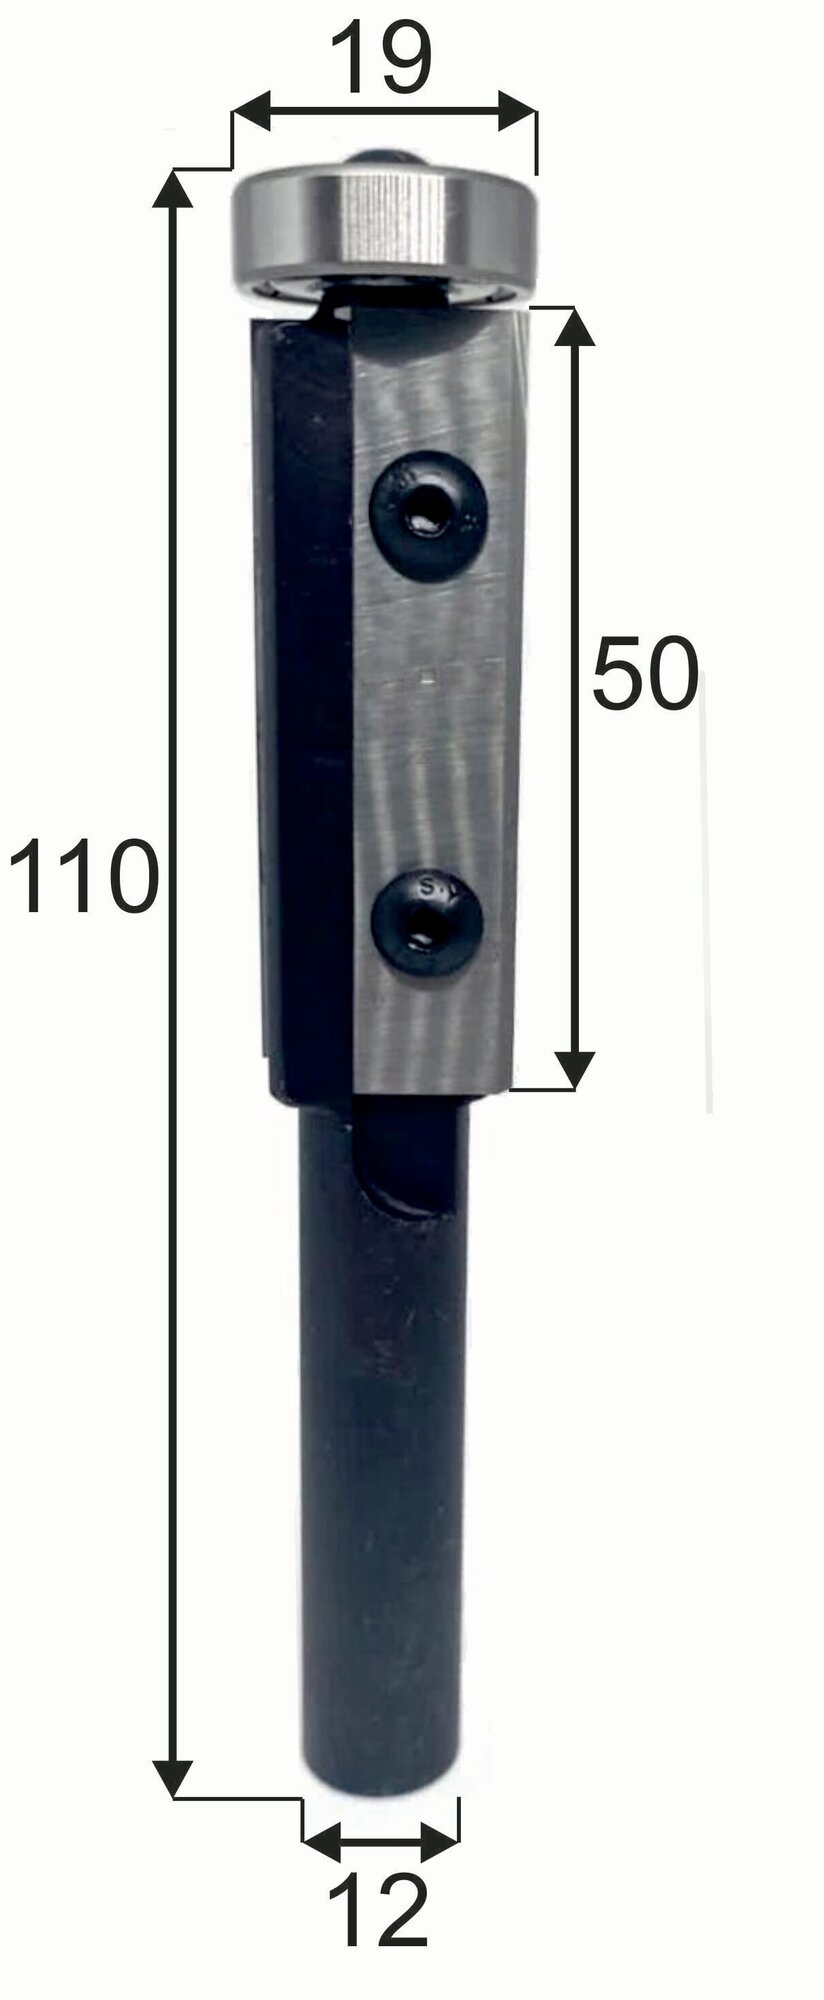 Фреза обгонная со сменными ножами (Нижний подшипник) D19 H50 S12